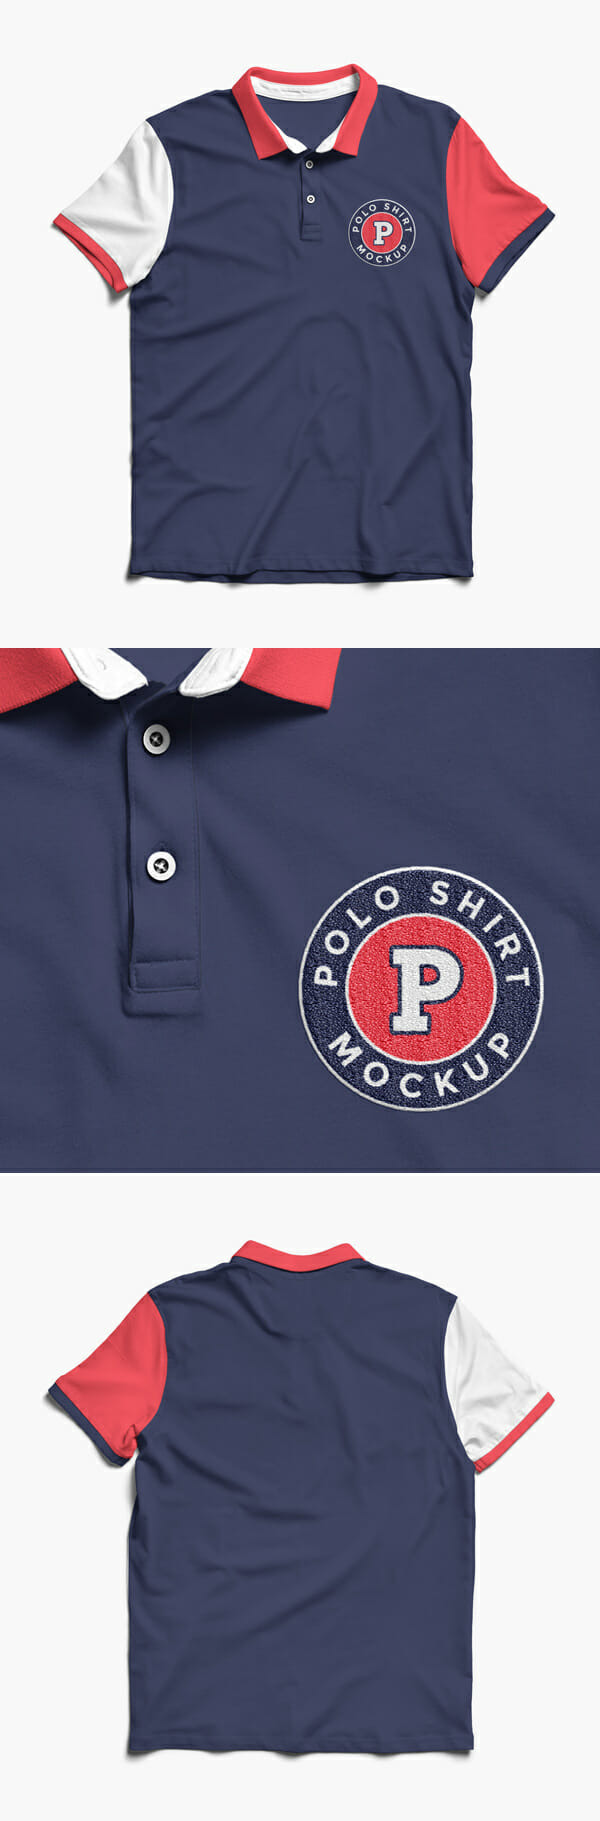 Download Fashionable Polo Shirt MockUp - Awesome Mockups